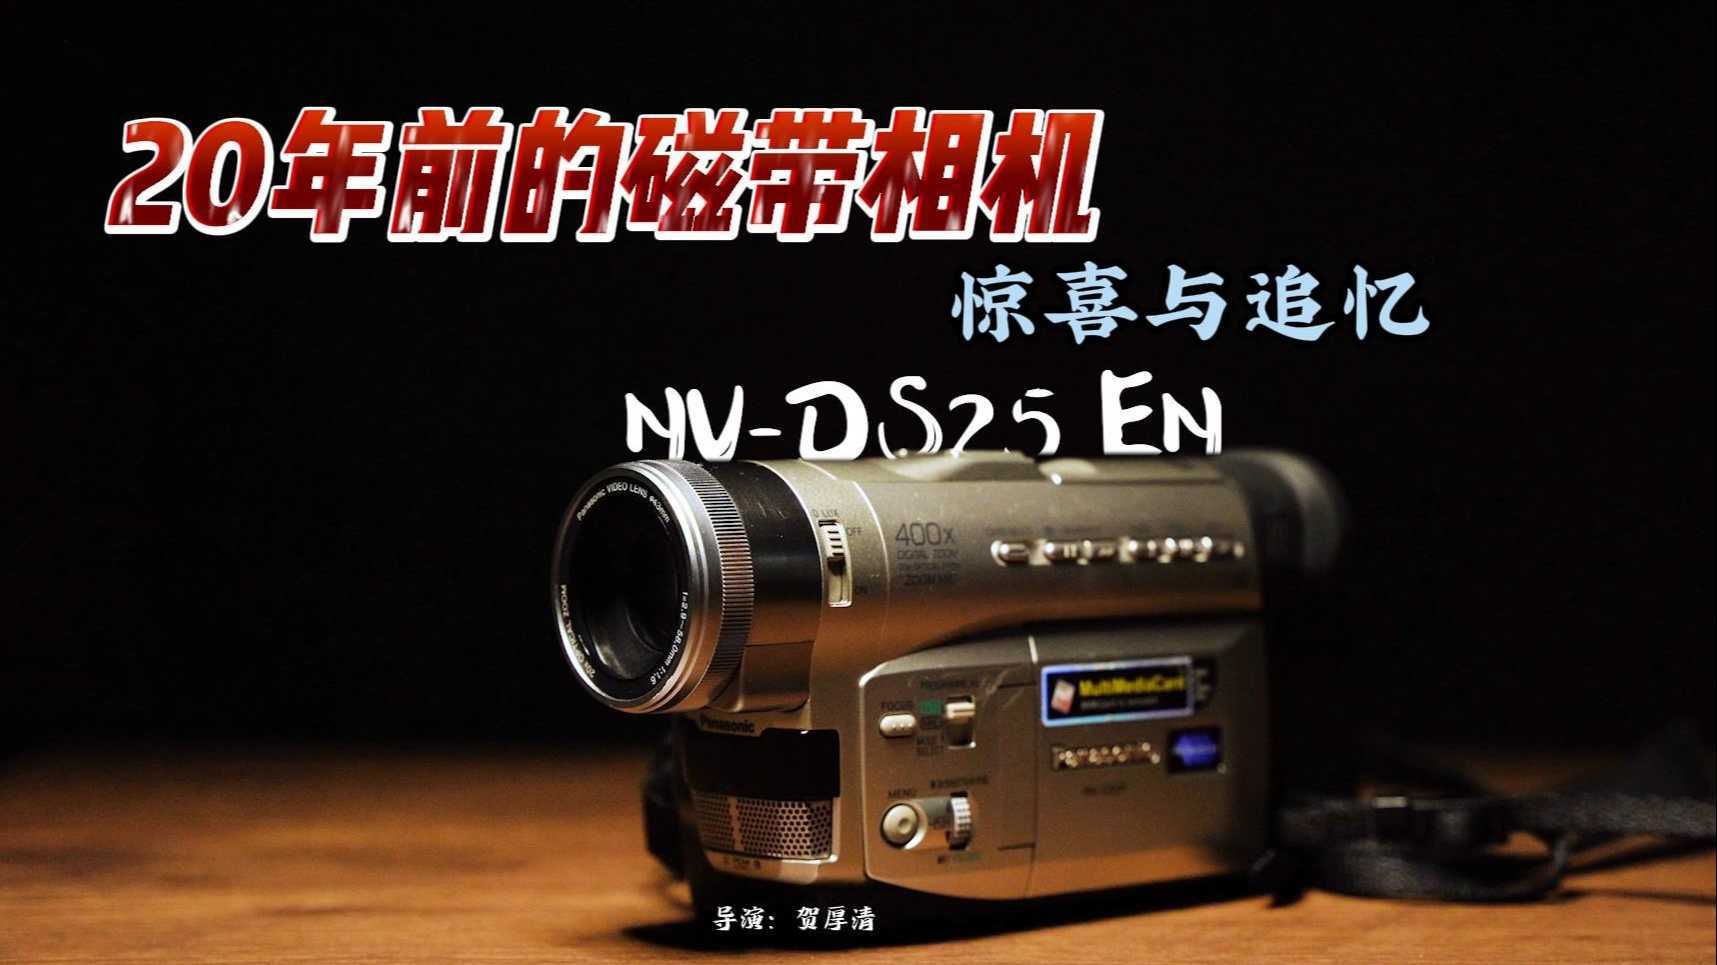 【2021】20年前的磁带相机 充满了惊喜与追忆